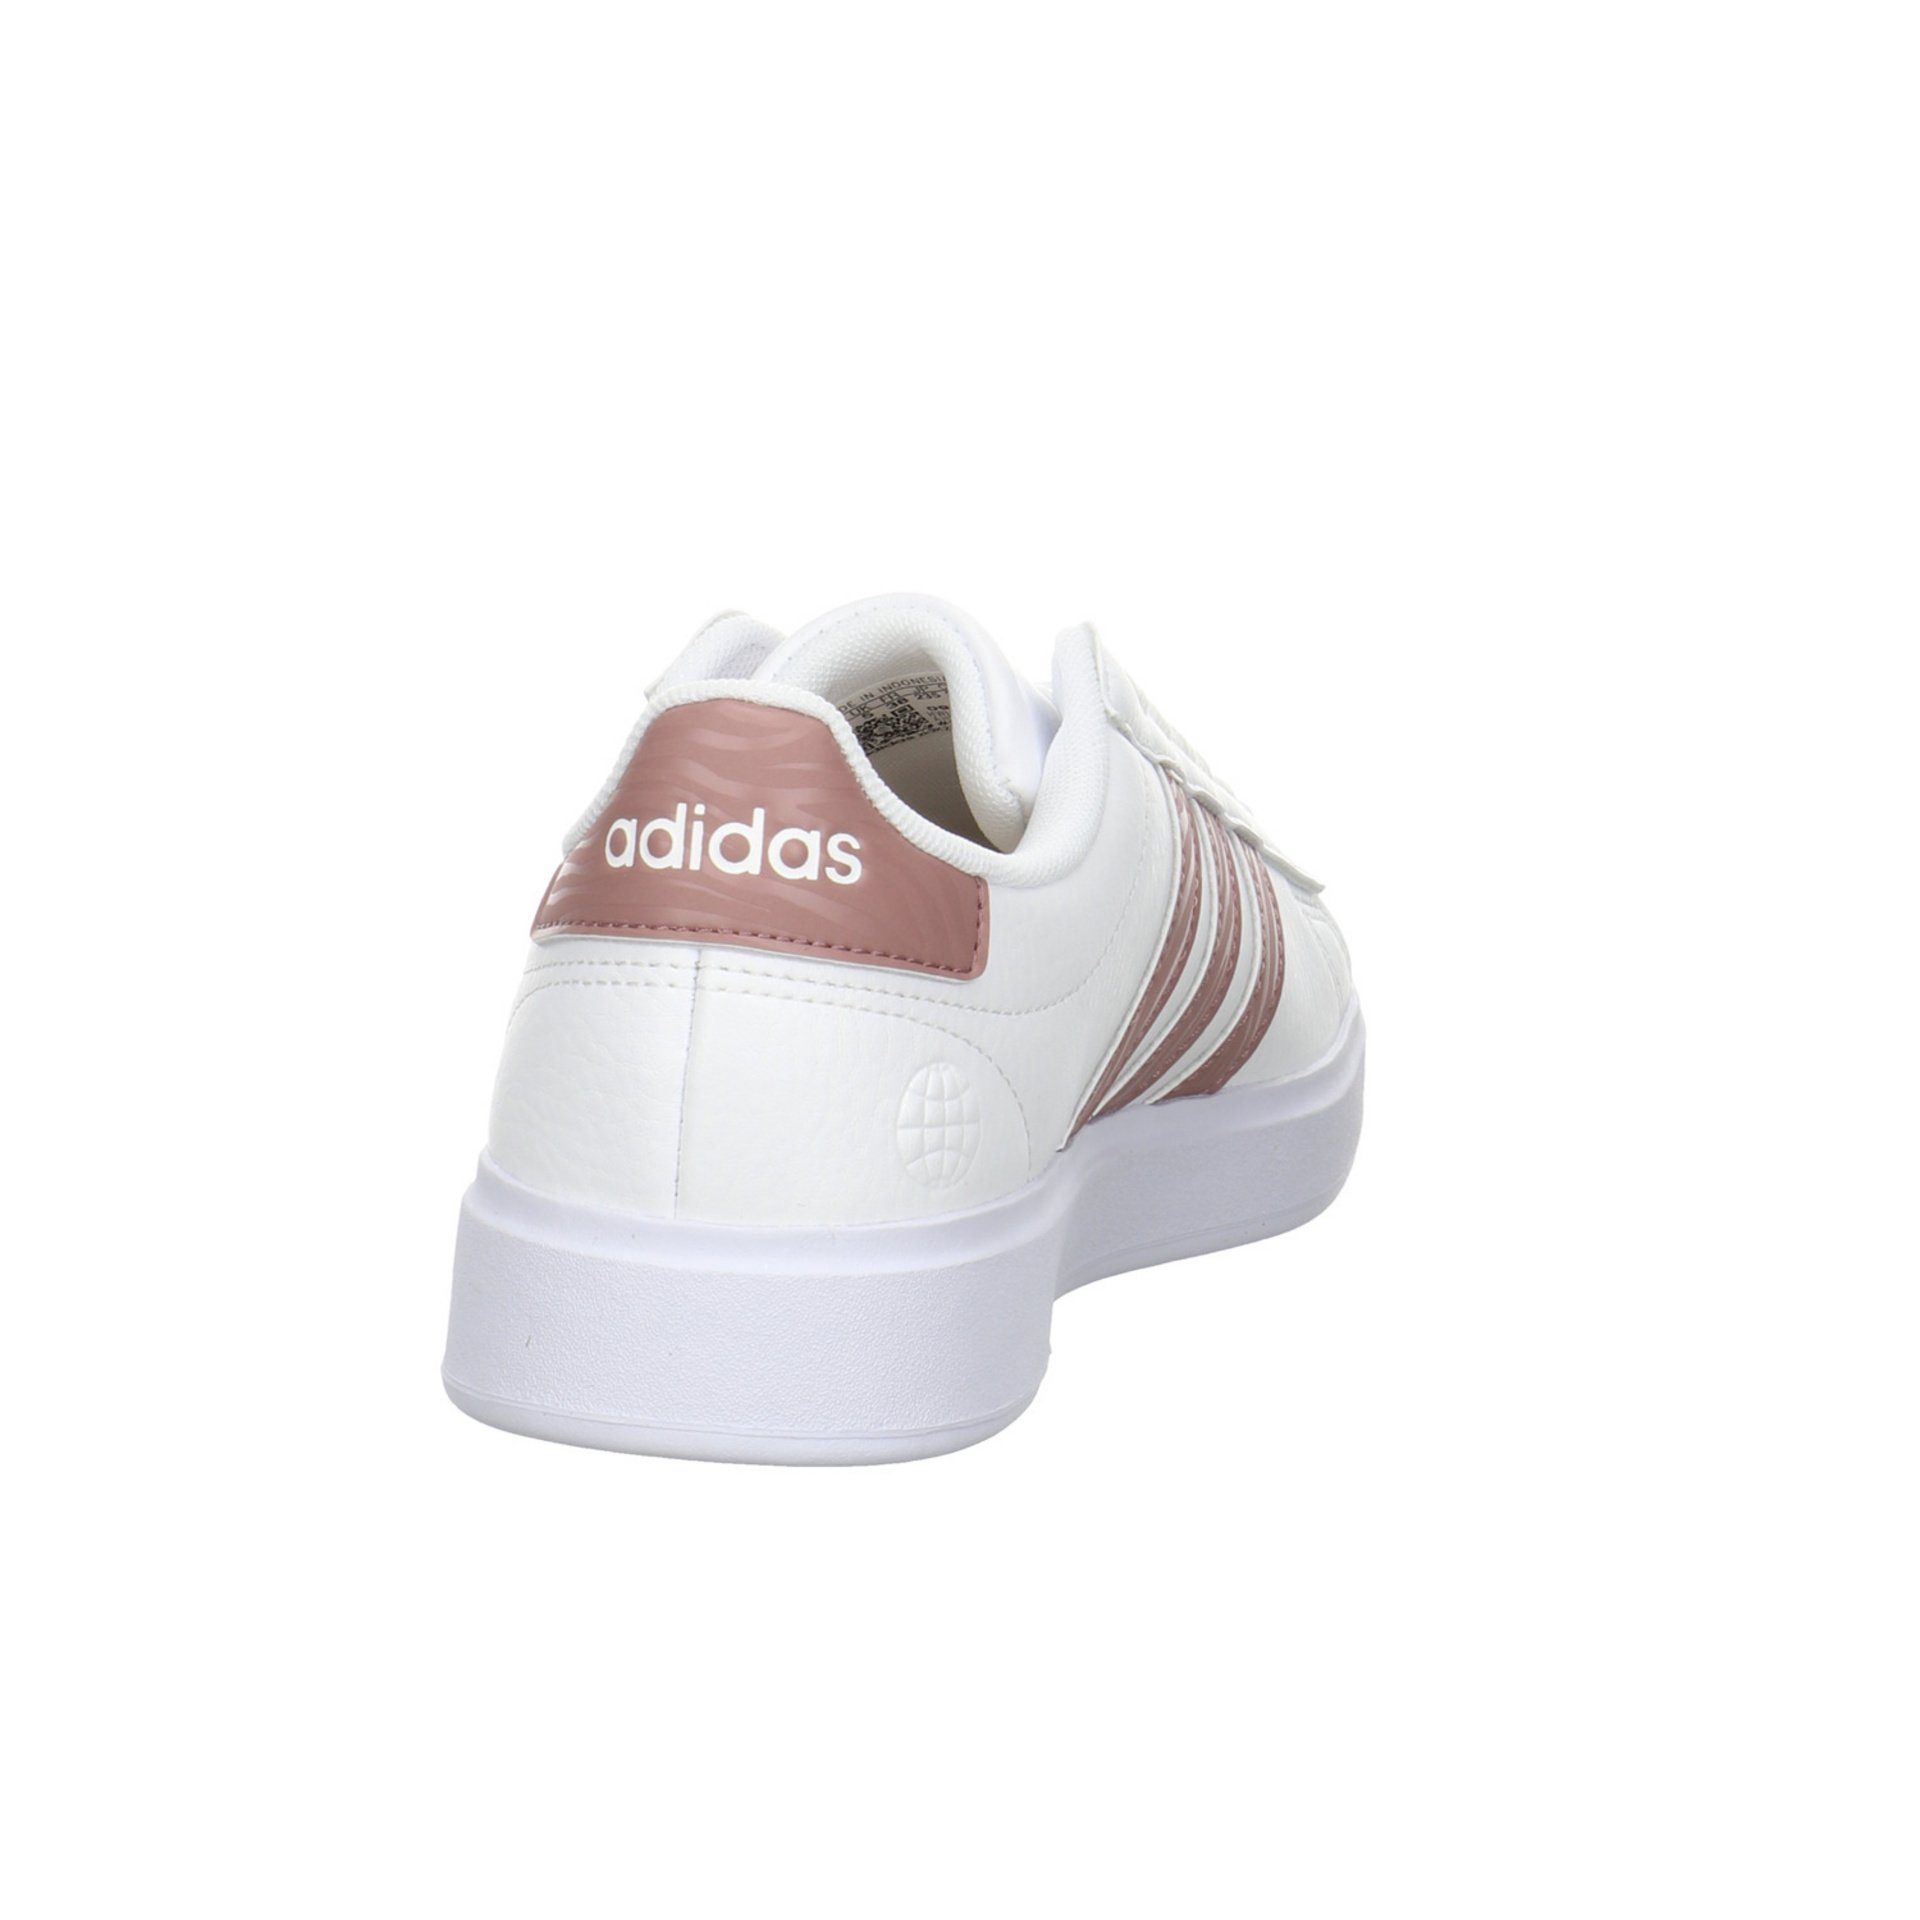 adidas 2.0 ftwr Damen white Synthetik Originals Breaknet Schnürschuh Schnürhalbschuhe Sneaker